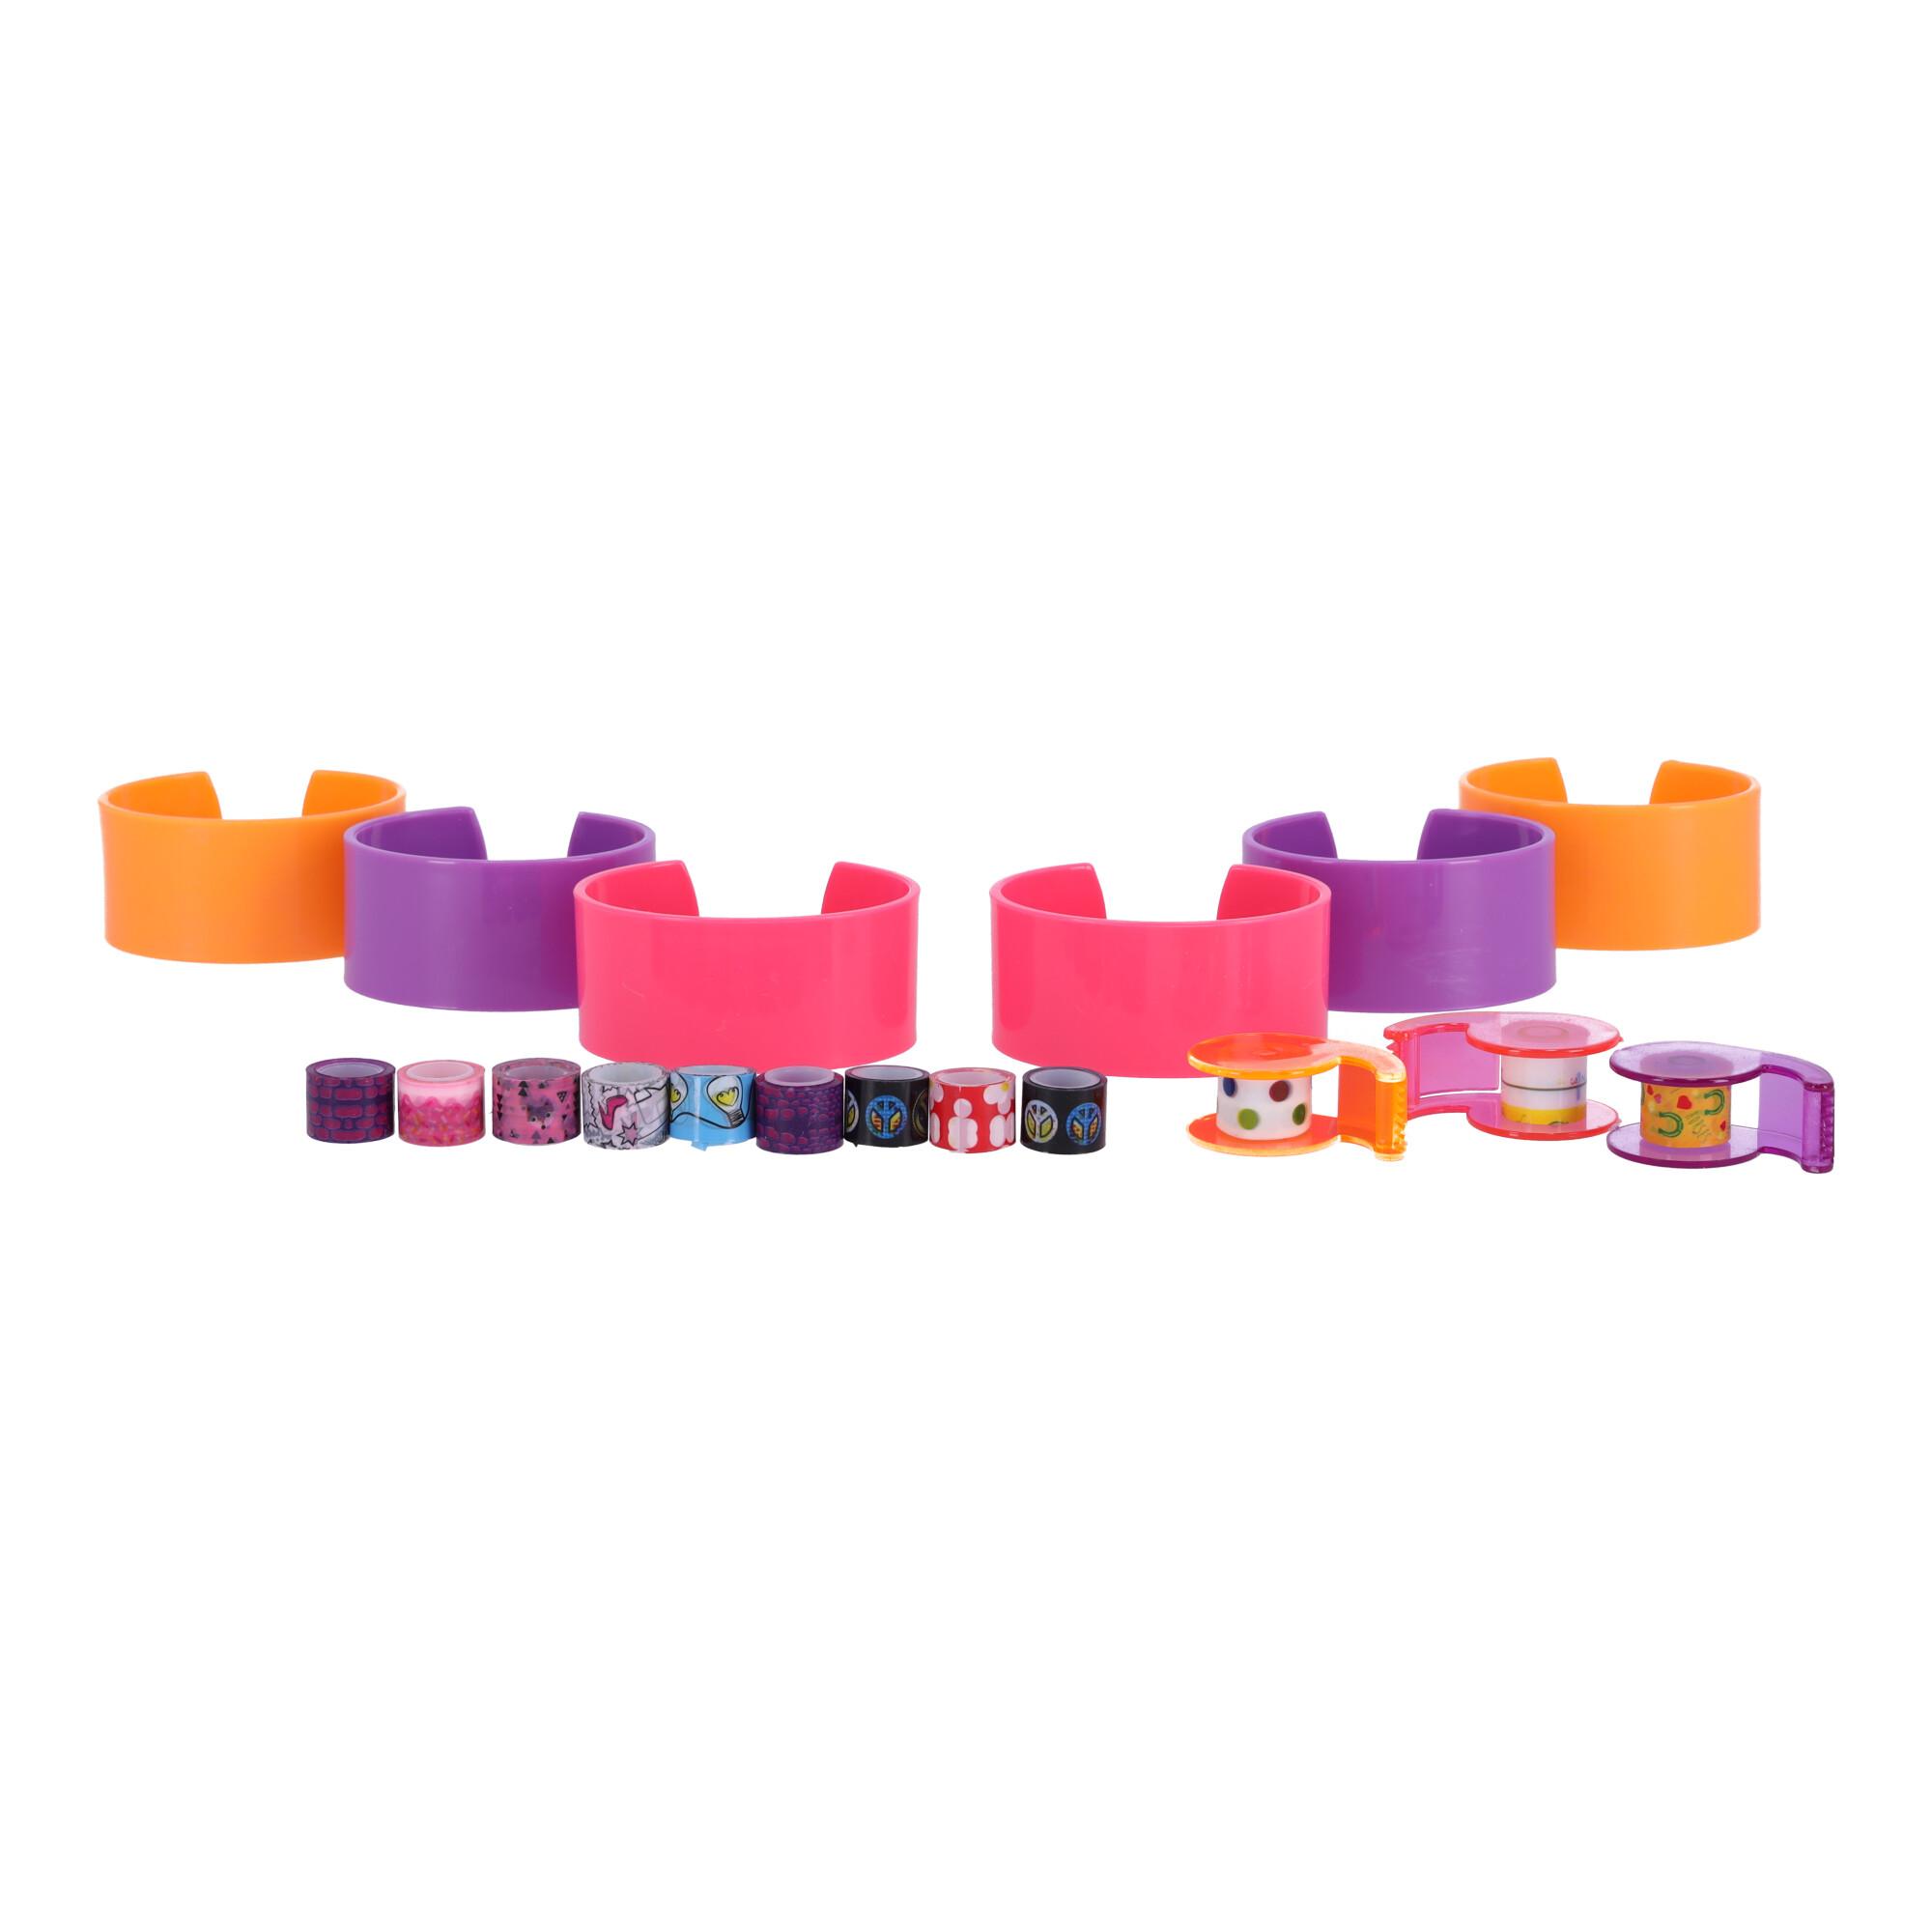 DIY toys- bracelets